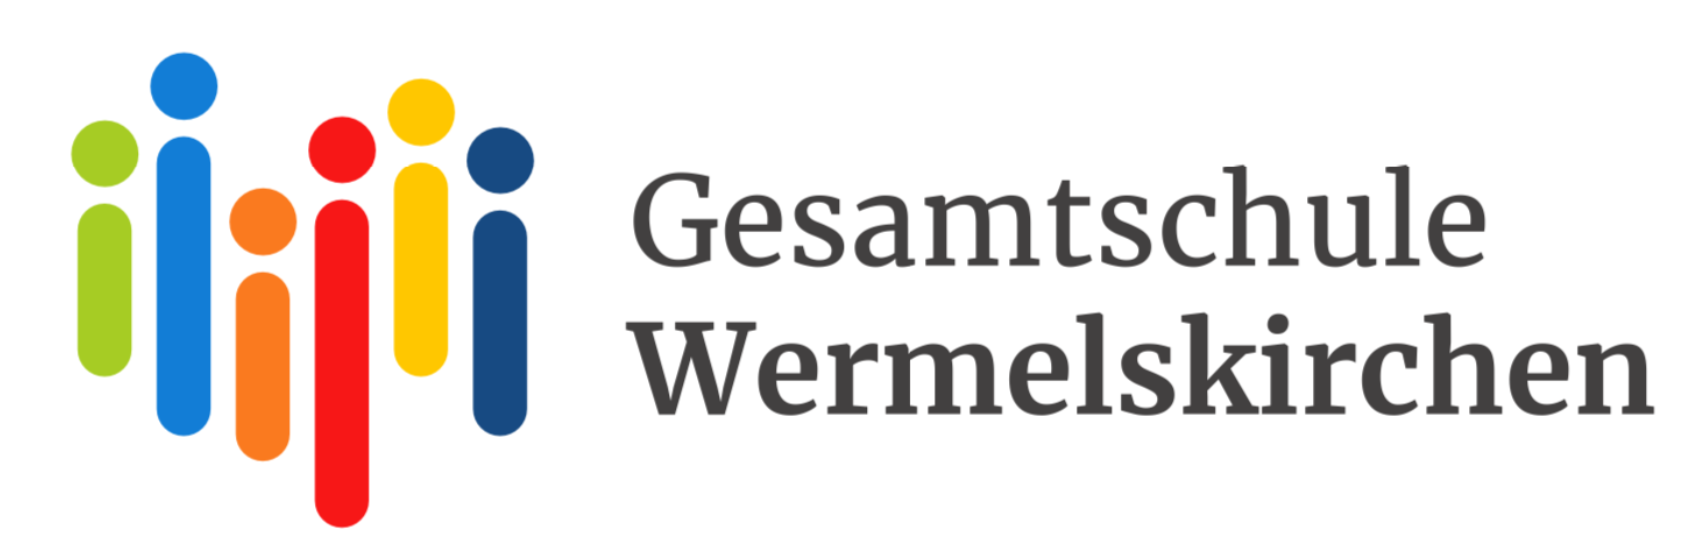 Gesamtschule Wermelskirchen (Päd. Netzwerk)